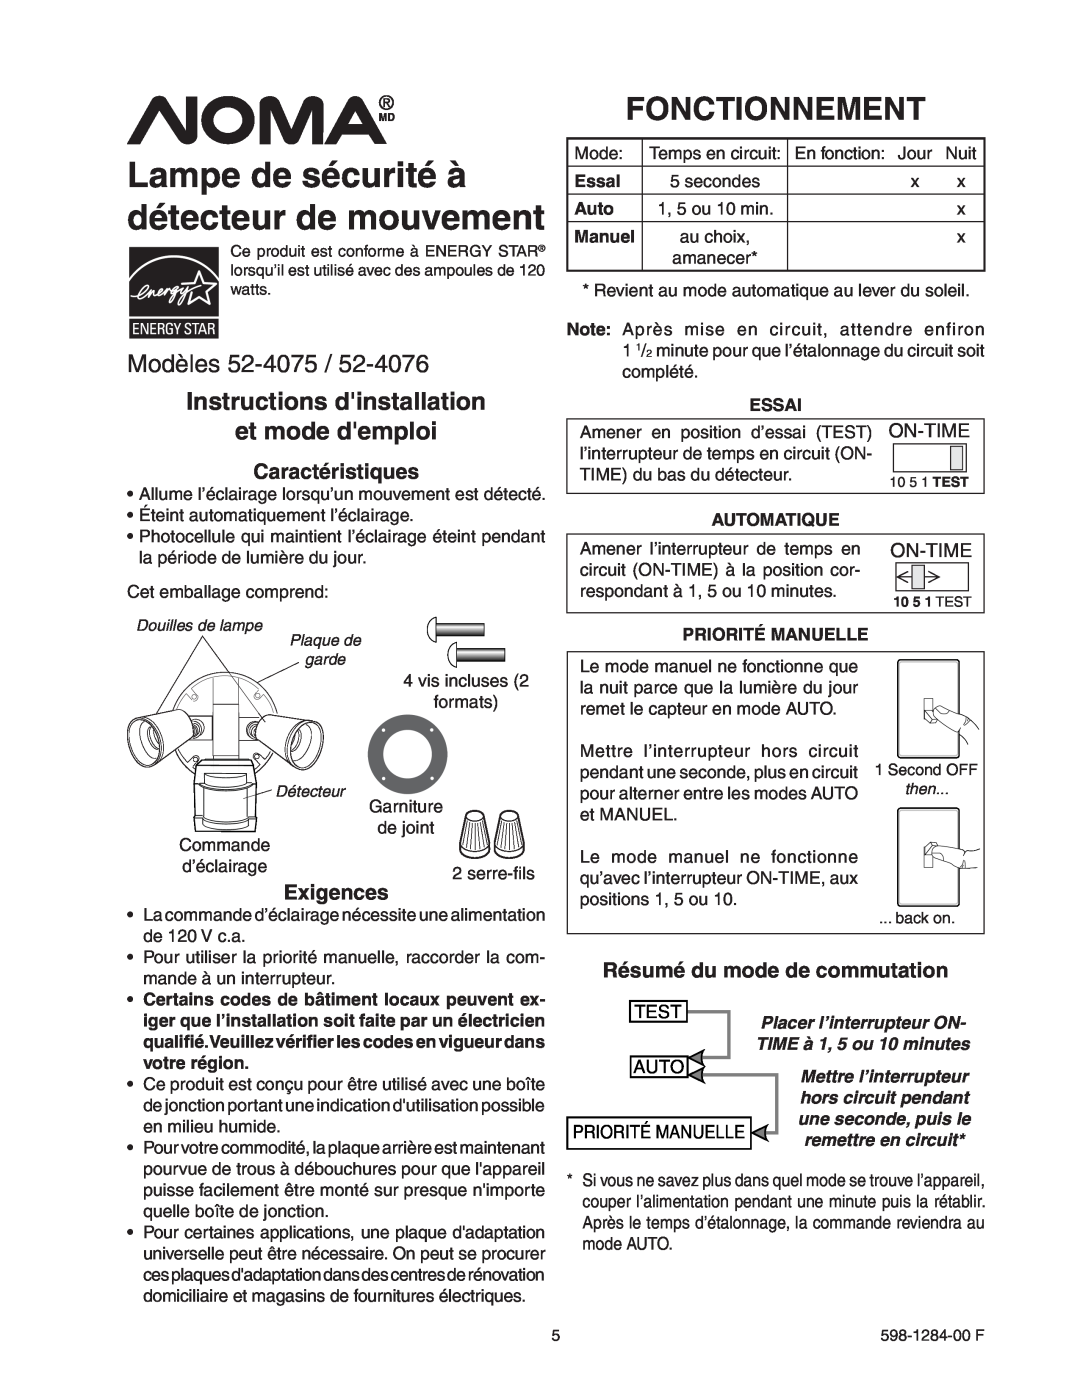 Heath Zenith 52-4075 Lampe de sécurité à détecteur de mouvement, Fonctionnement, Modèles, Caractéristiques, Exigences 